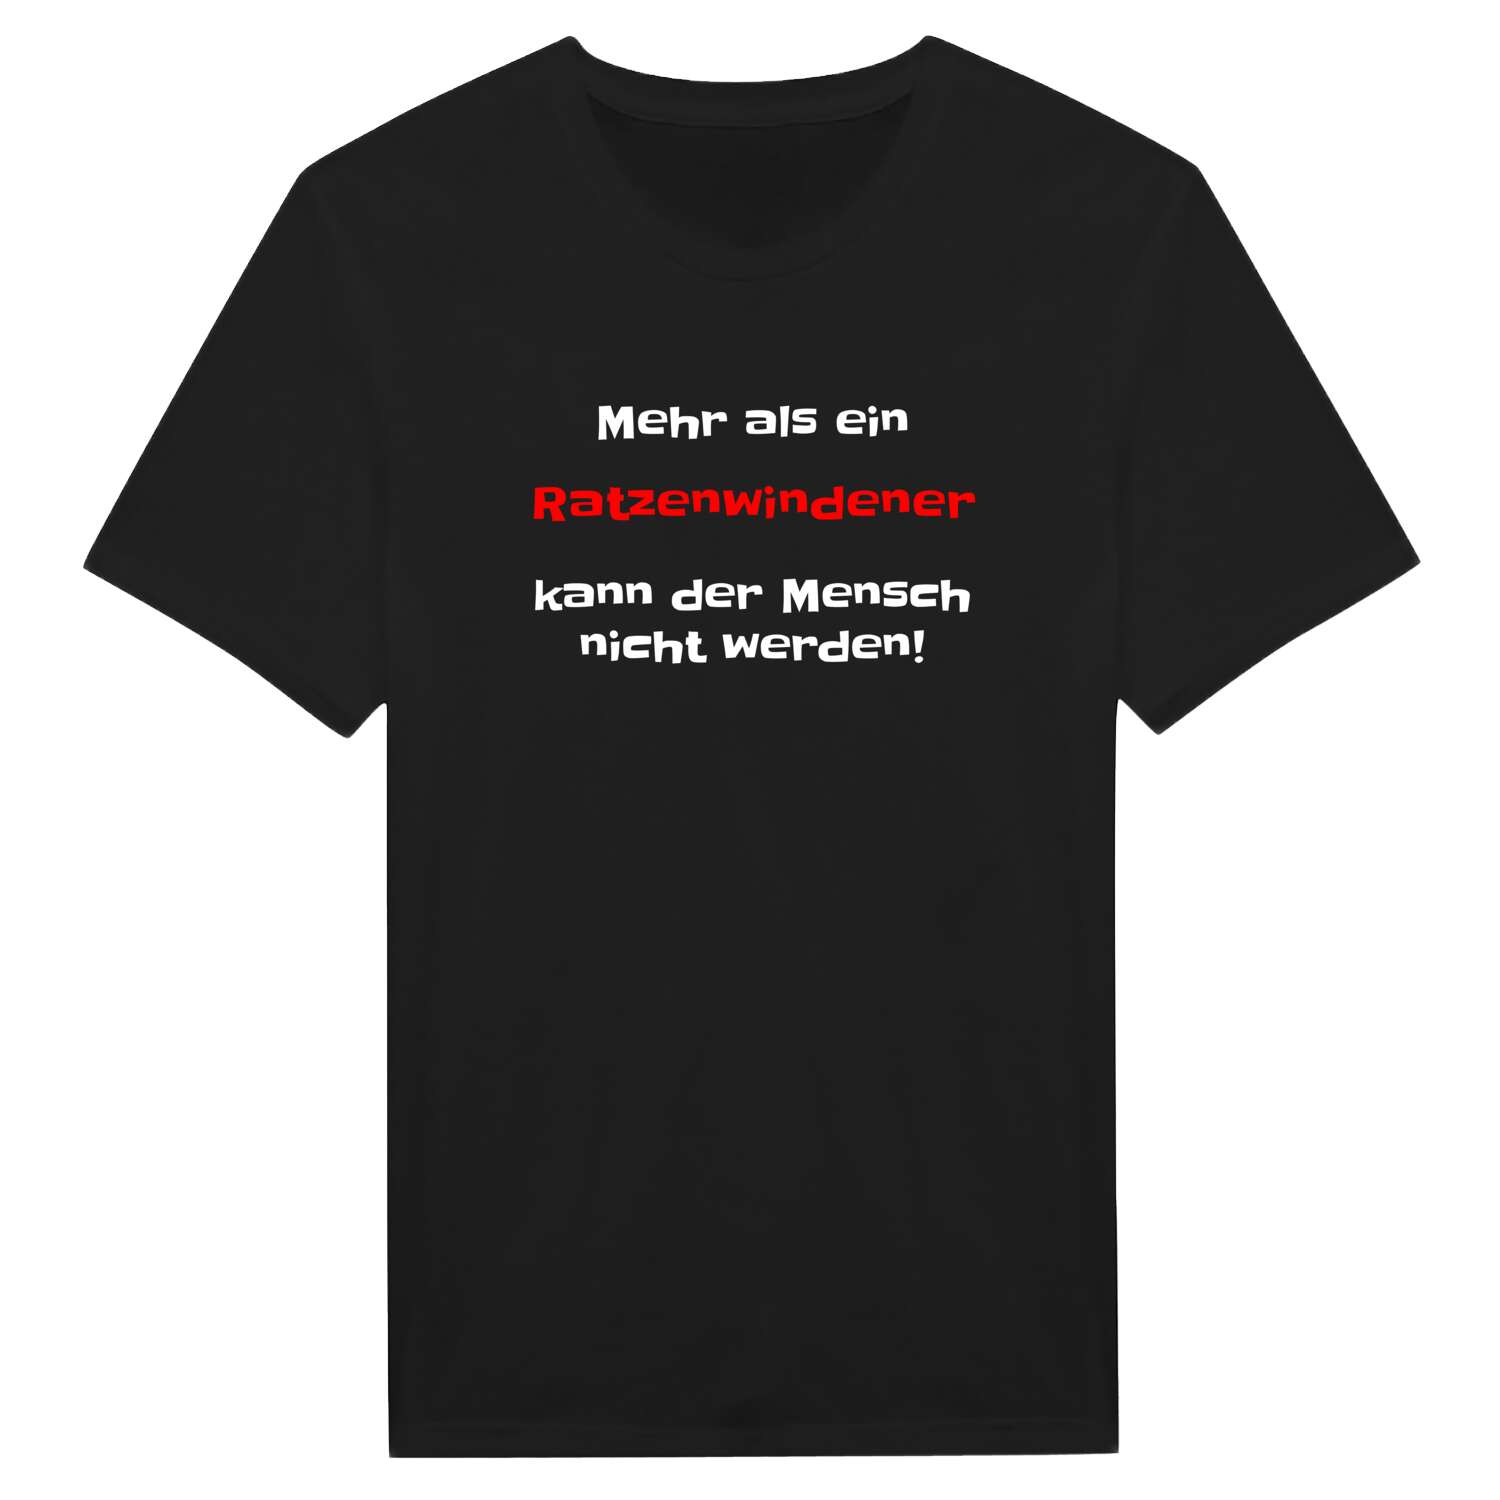 Ratzenwinden T-Shirt »Mehr als ein«